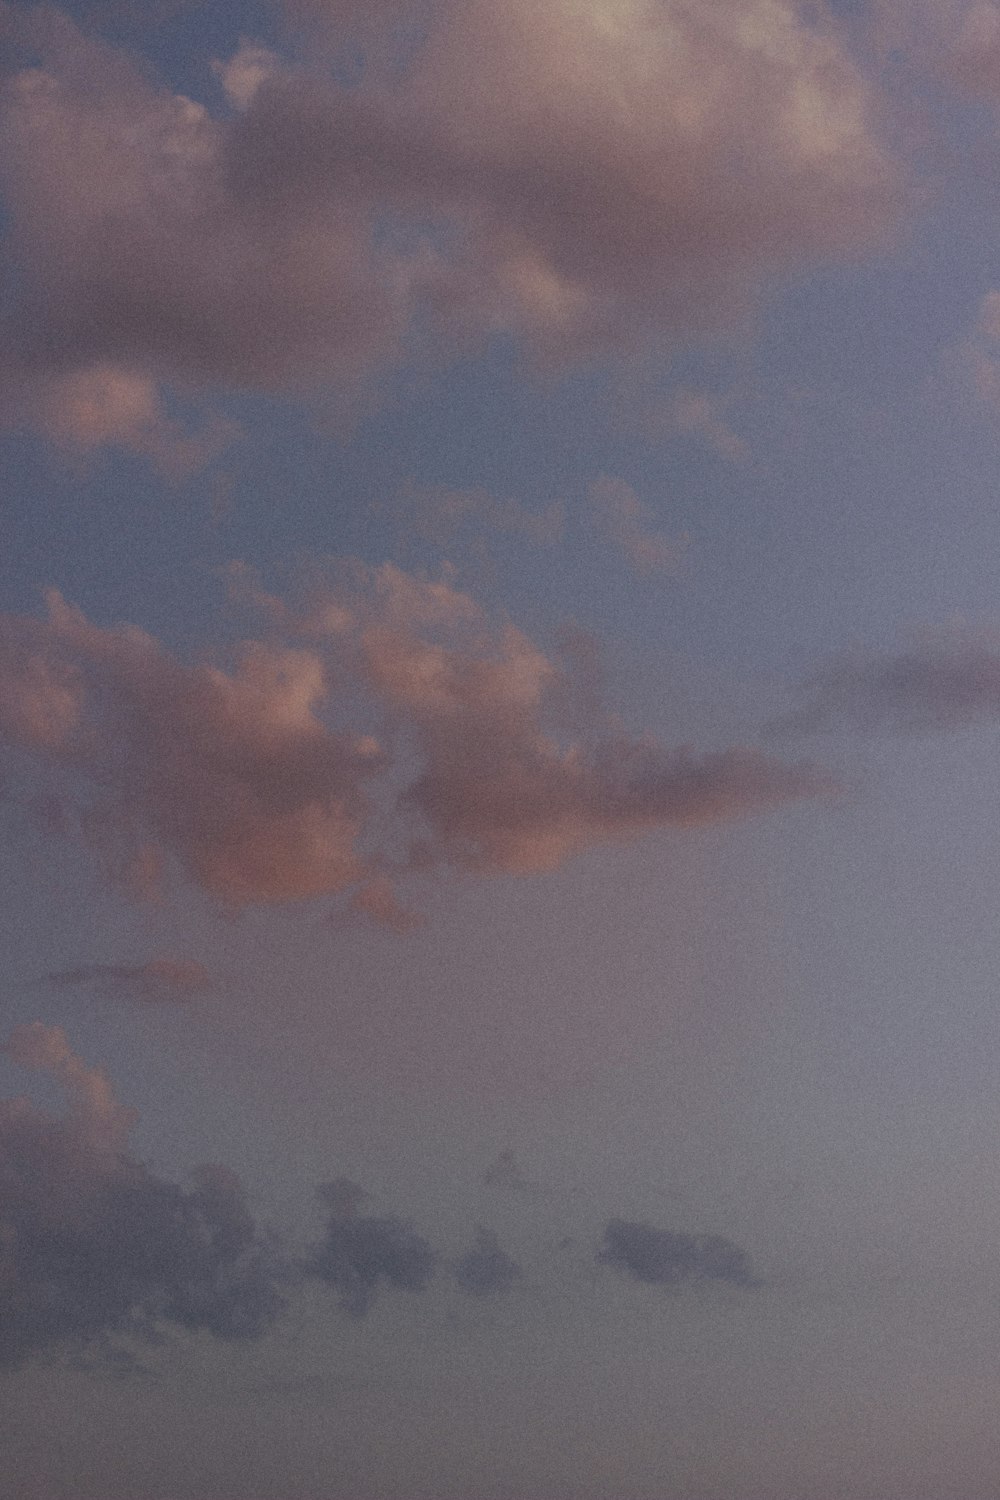 um avião voando no céu com nuvens ao fundo